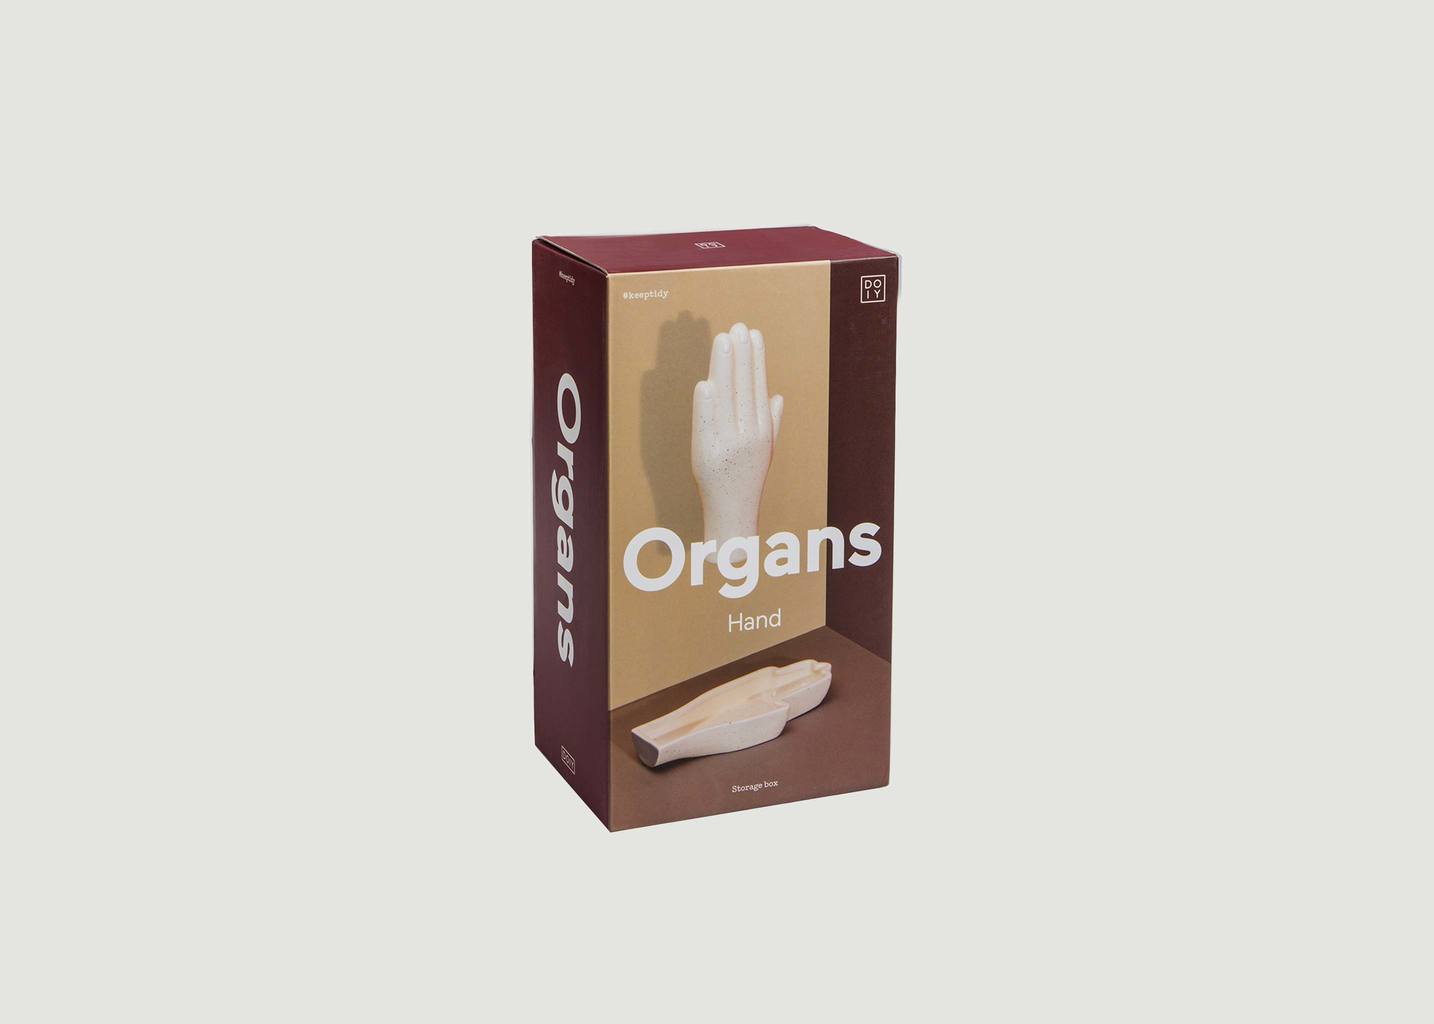 Boîte De Rangement Organs Main - Doiy